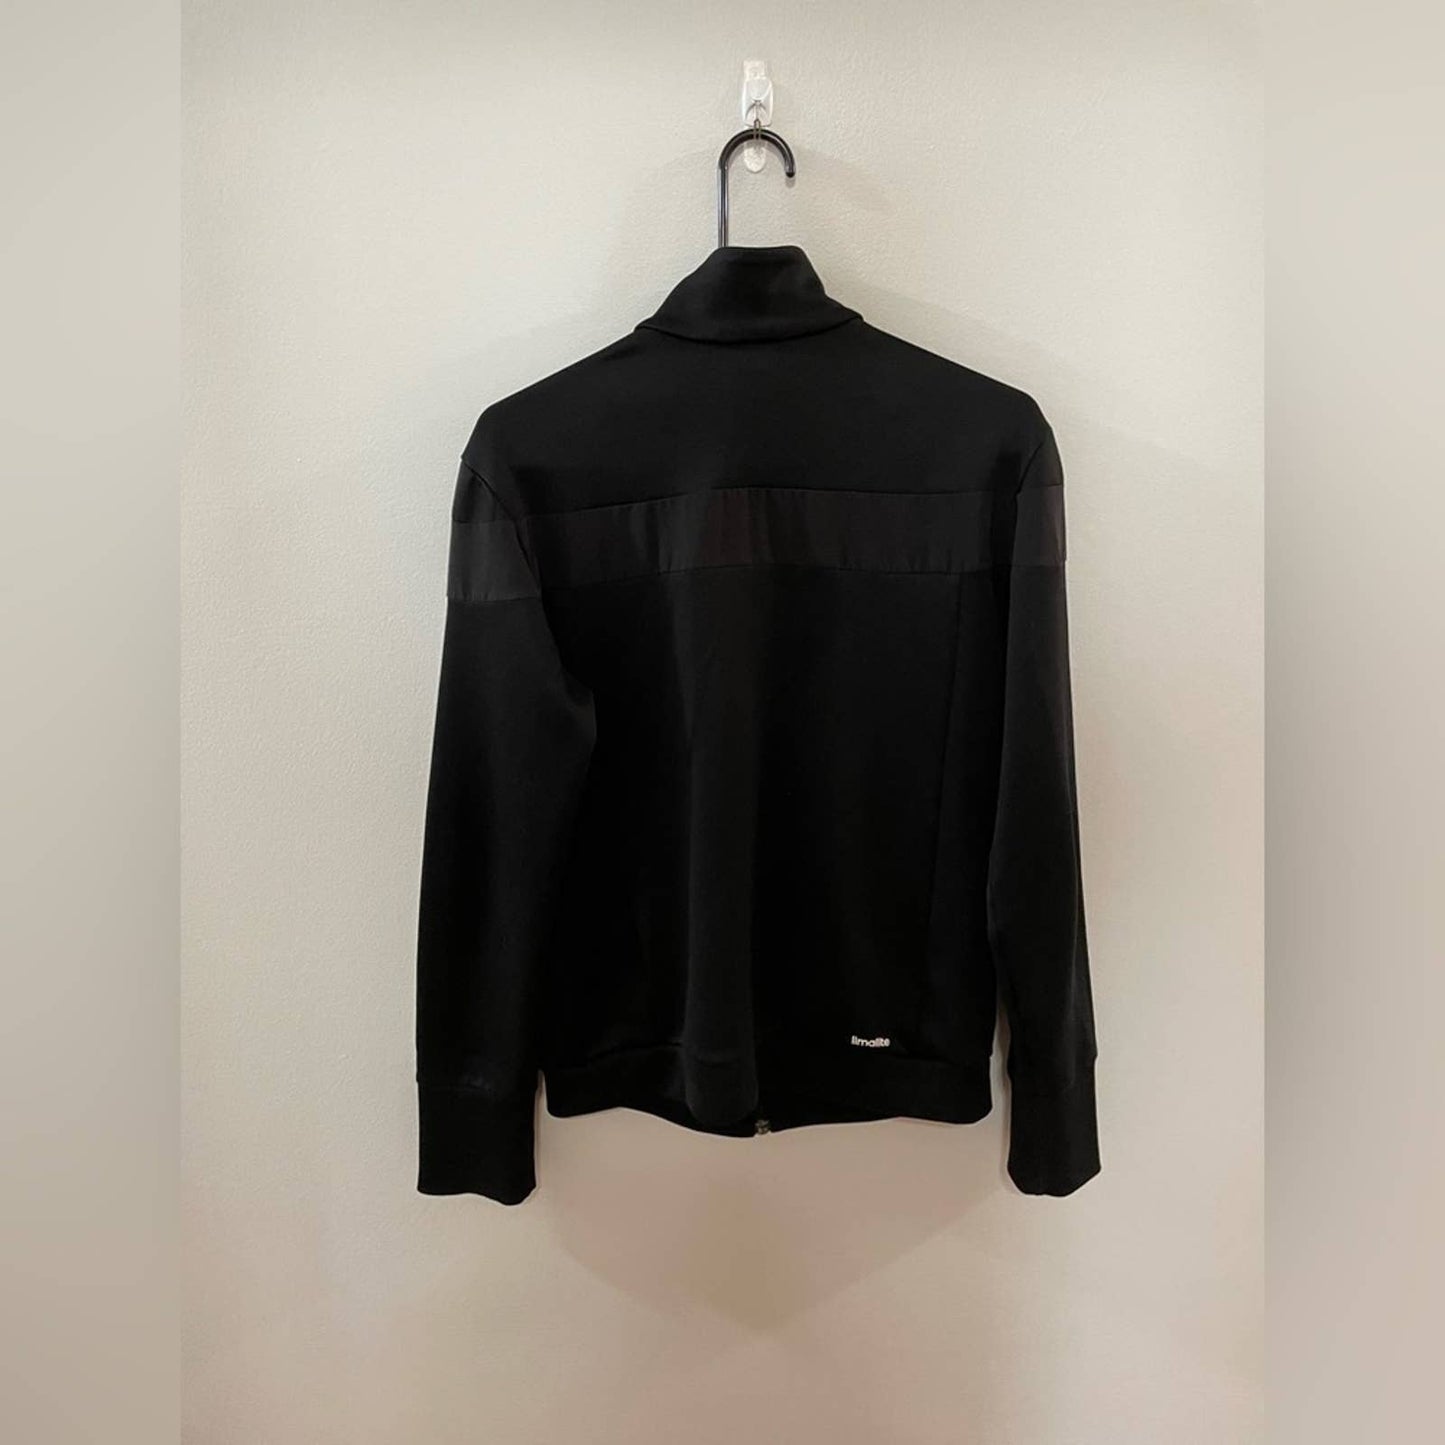 MD Black/White Adidas Long Sleeve Climalite Zip-Up Jacket